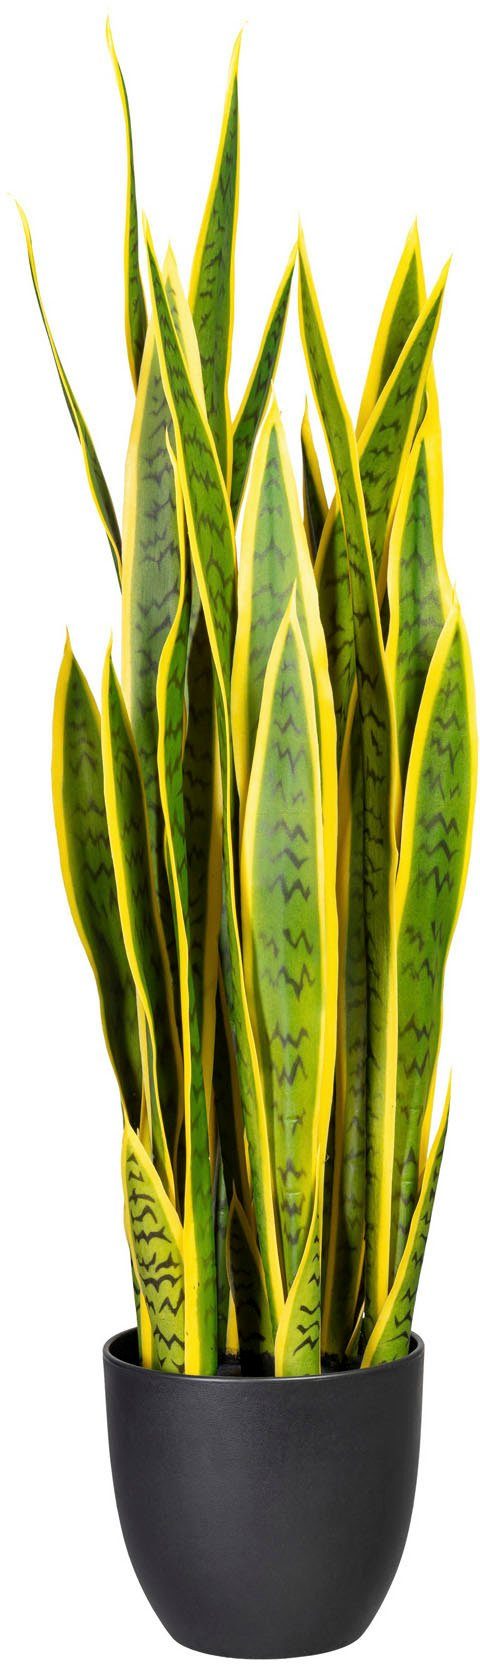 [100% Qualitätsgarantie] Creativ green, cm Sanseveria Zimmerpflanze 90 Höhe Künstliche Sanseveria,